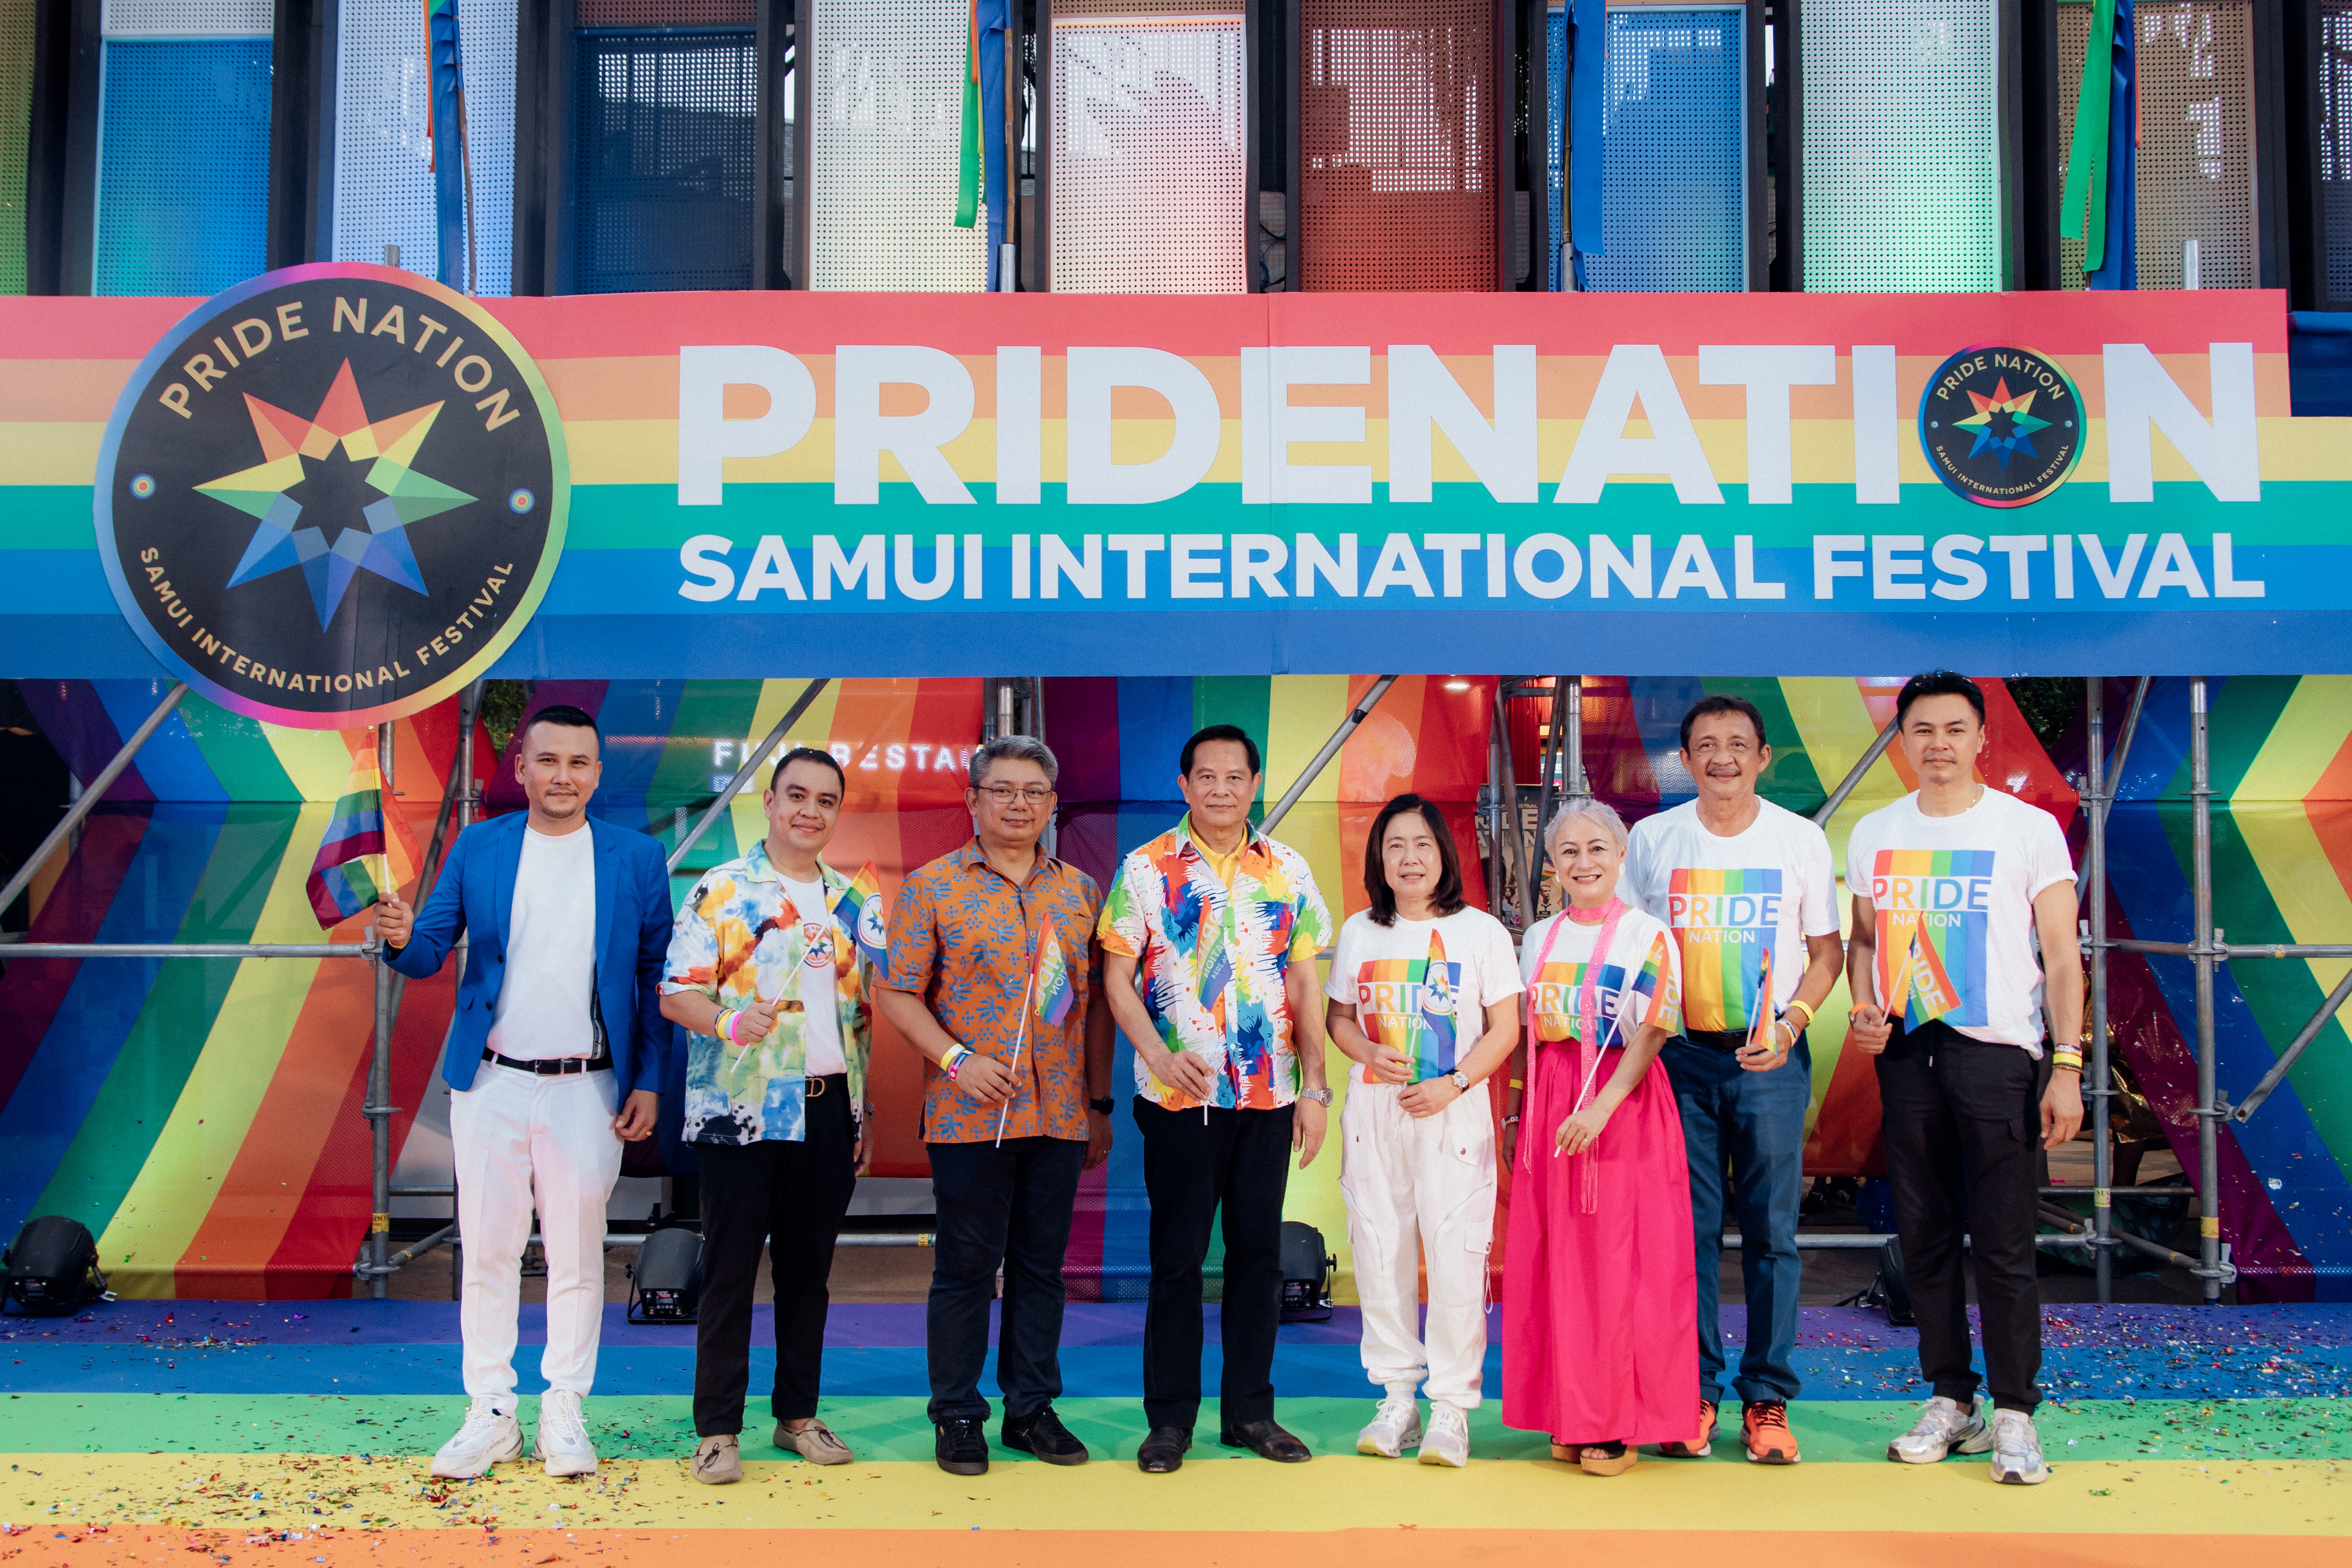 อาร์เอส มัลติเอ็กซ์ จัดงานเซเลเบรท “PRIDE NATION SAMUI INTERNATIONAL FESTIVAL”